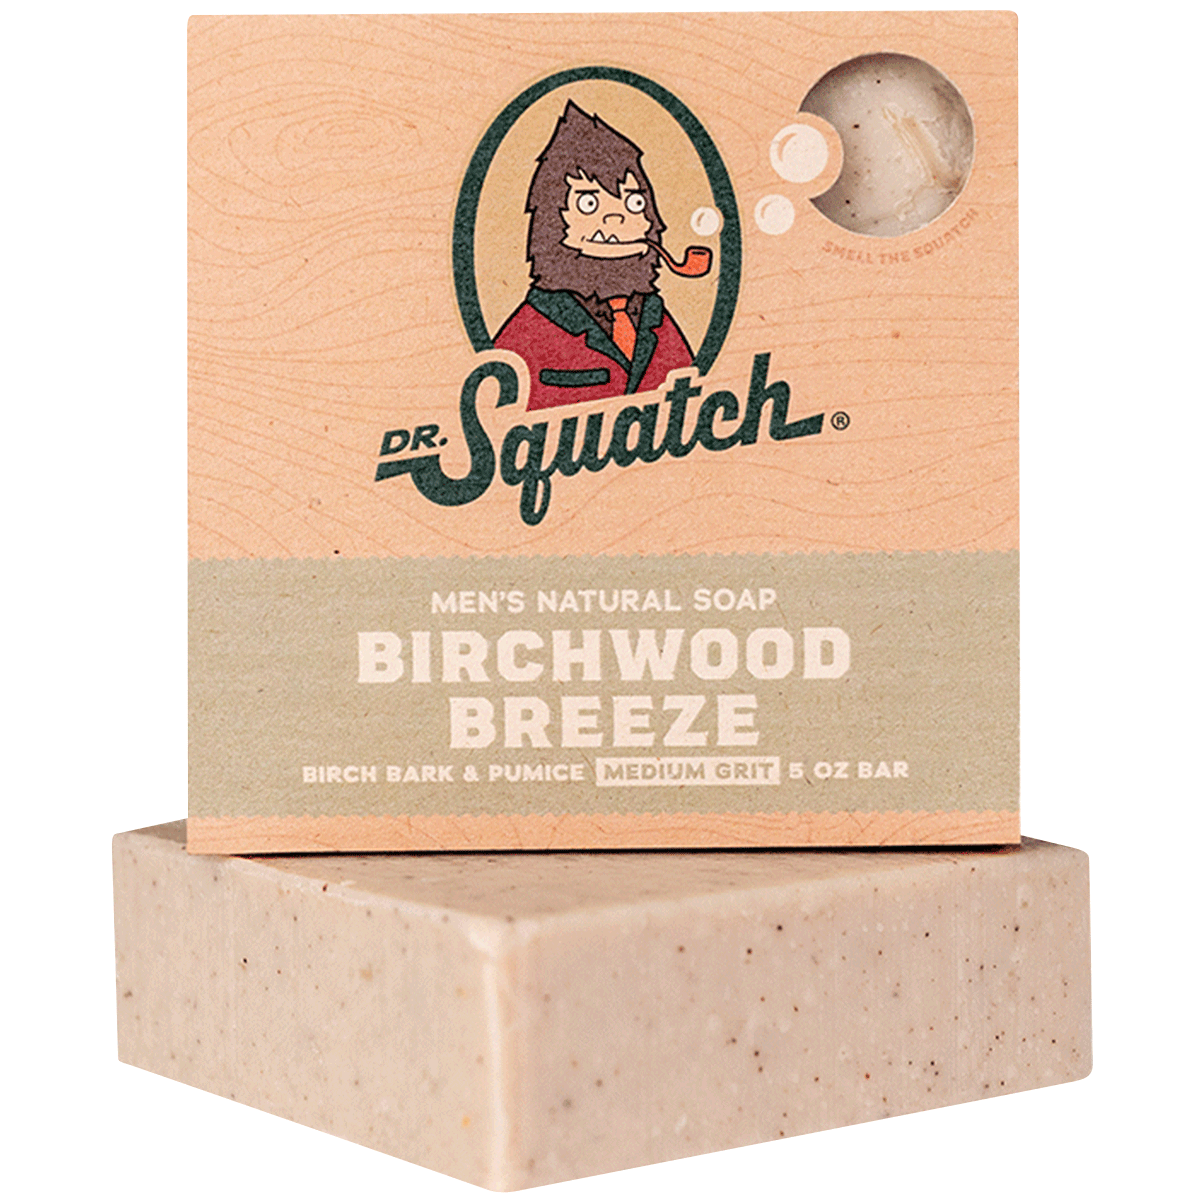 Dr. Squatch Natural Bar Soap For Men